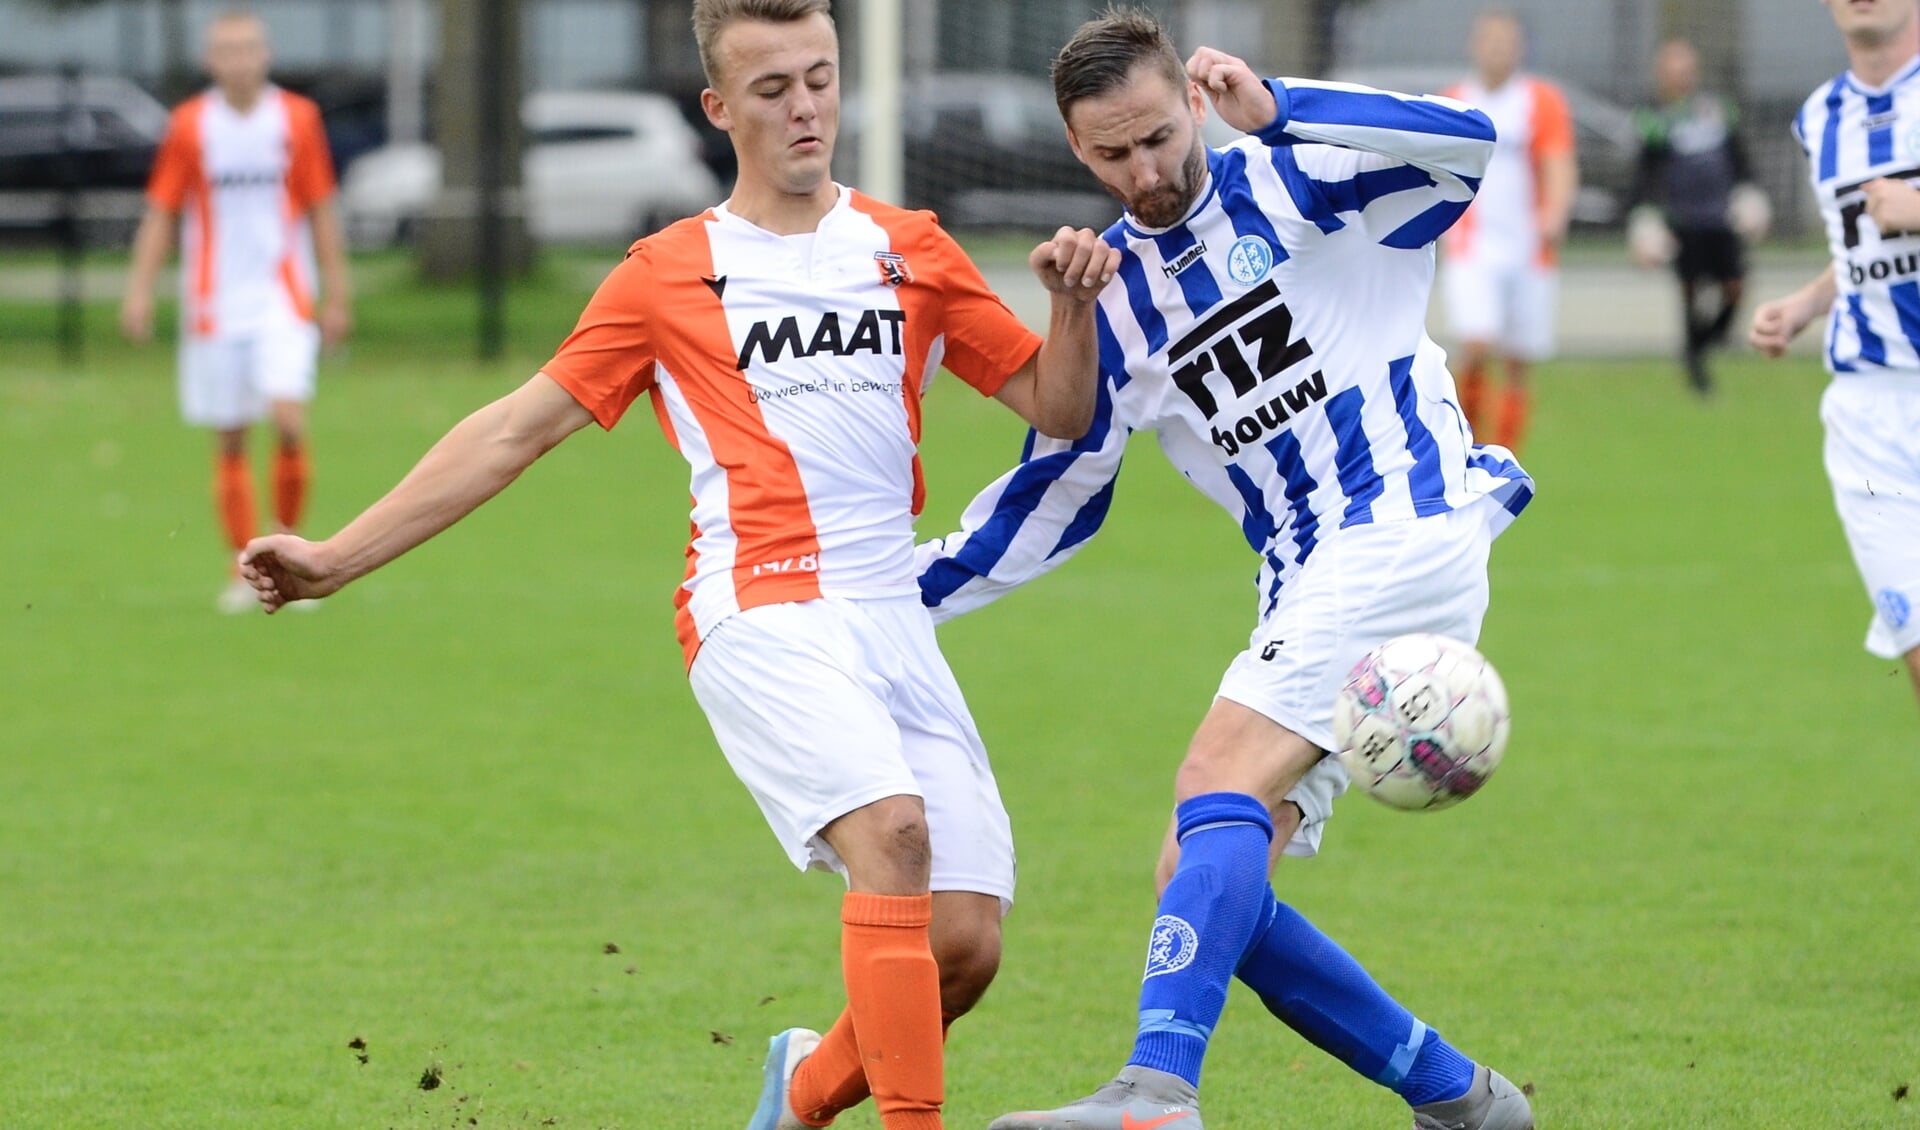 • Alblasserdam - Schoonhoven (3-0).